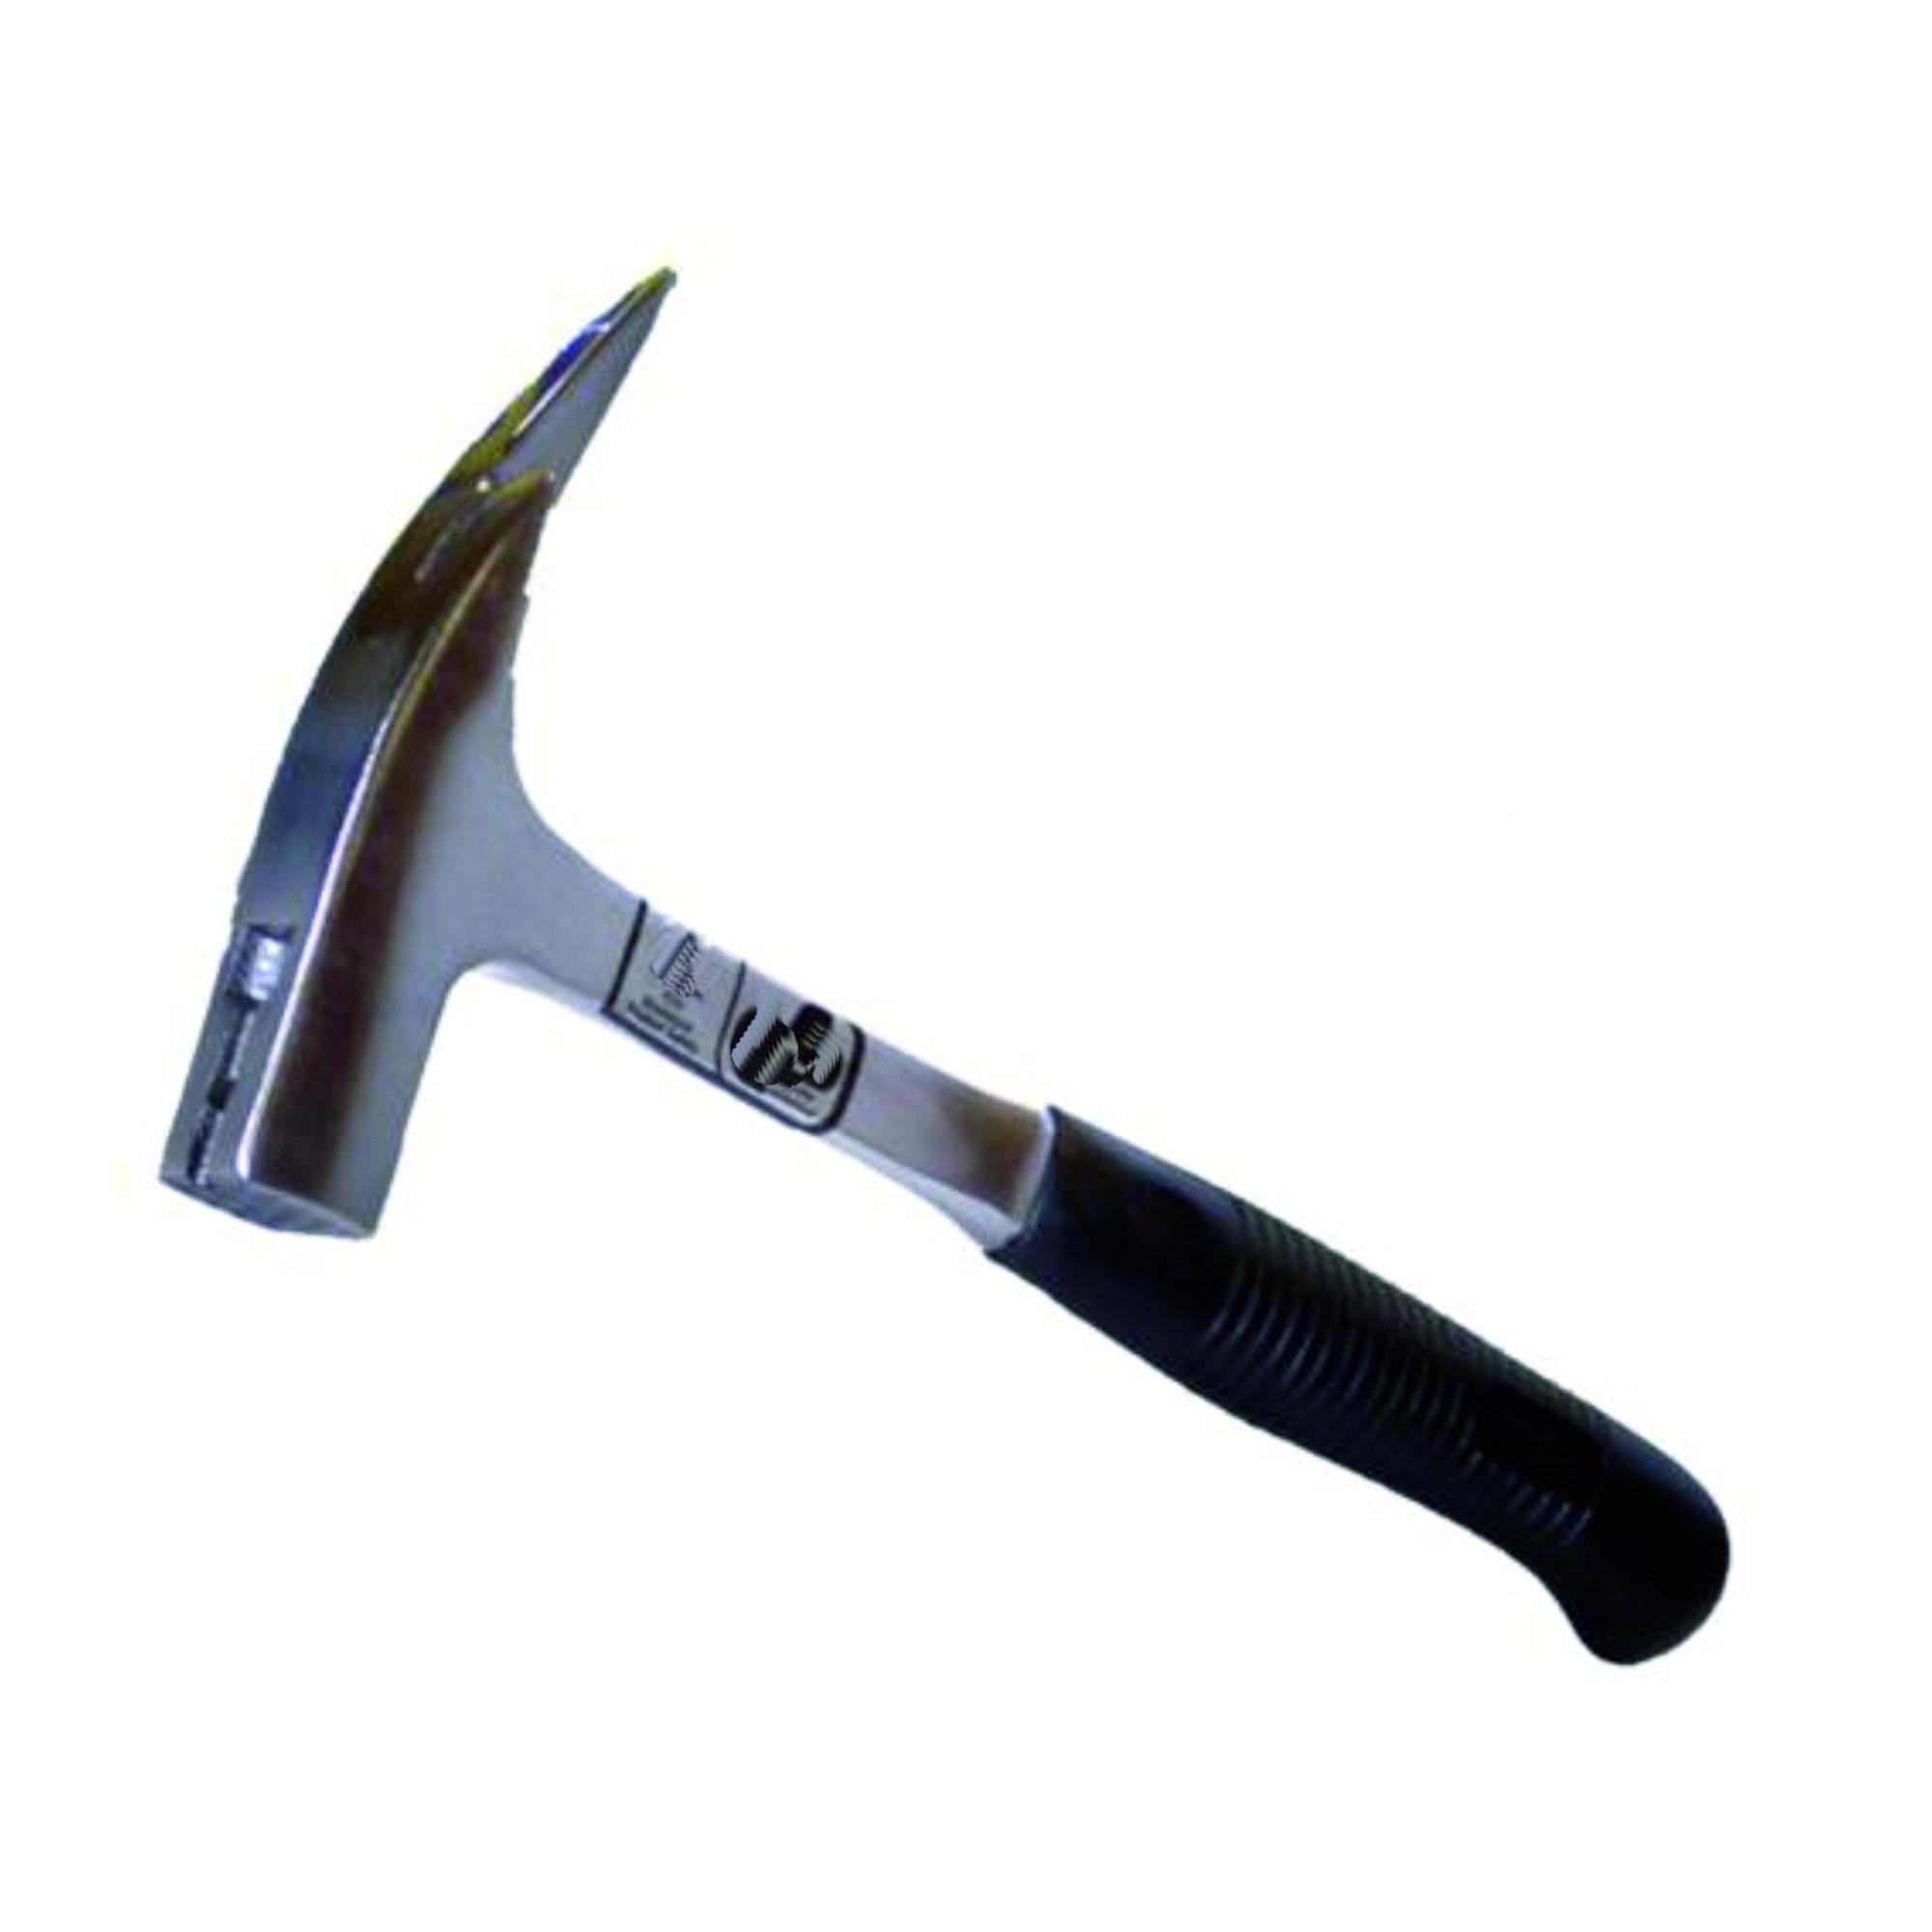 00112001 Latthammer Stahlrohrstiel Kunststoffgriff, mit Magnet